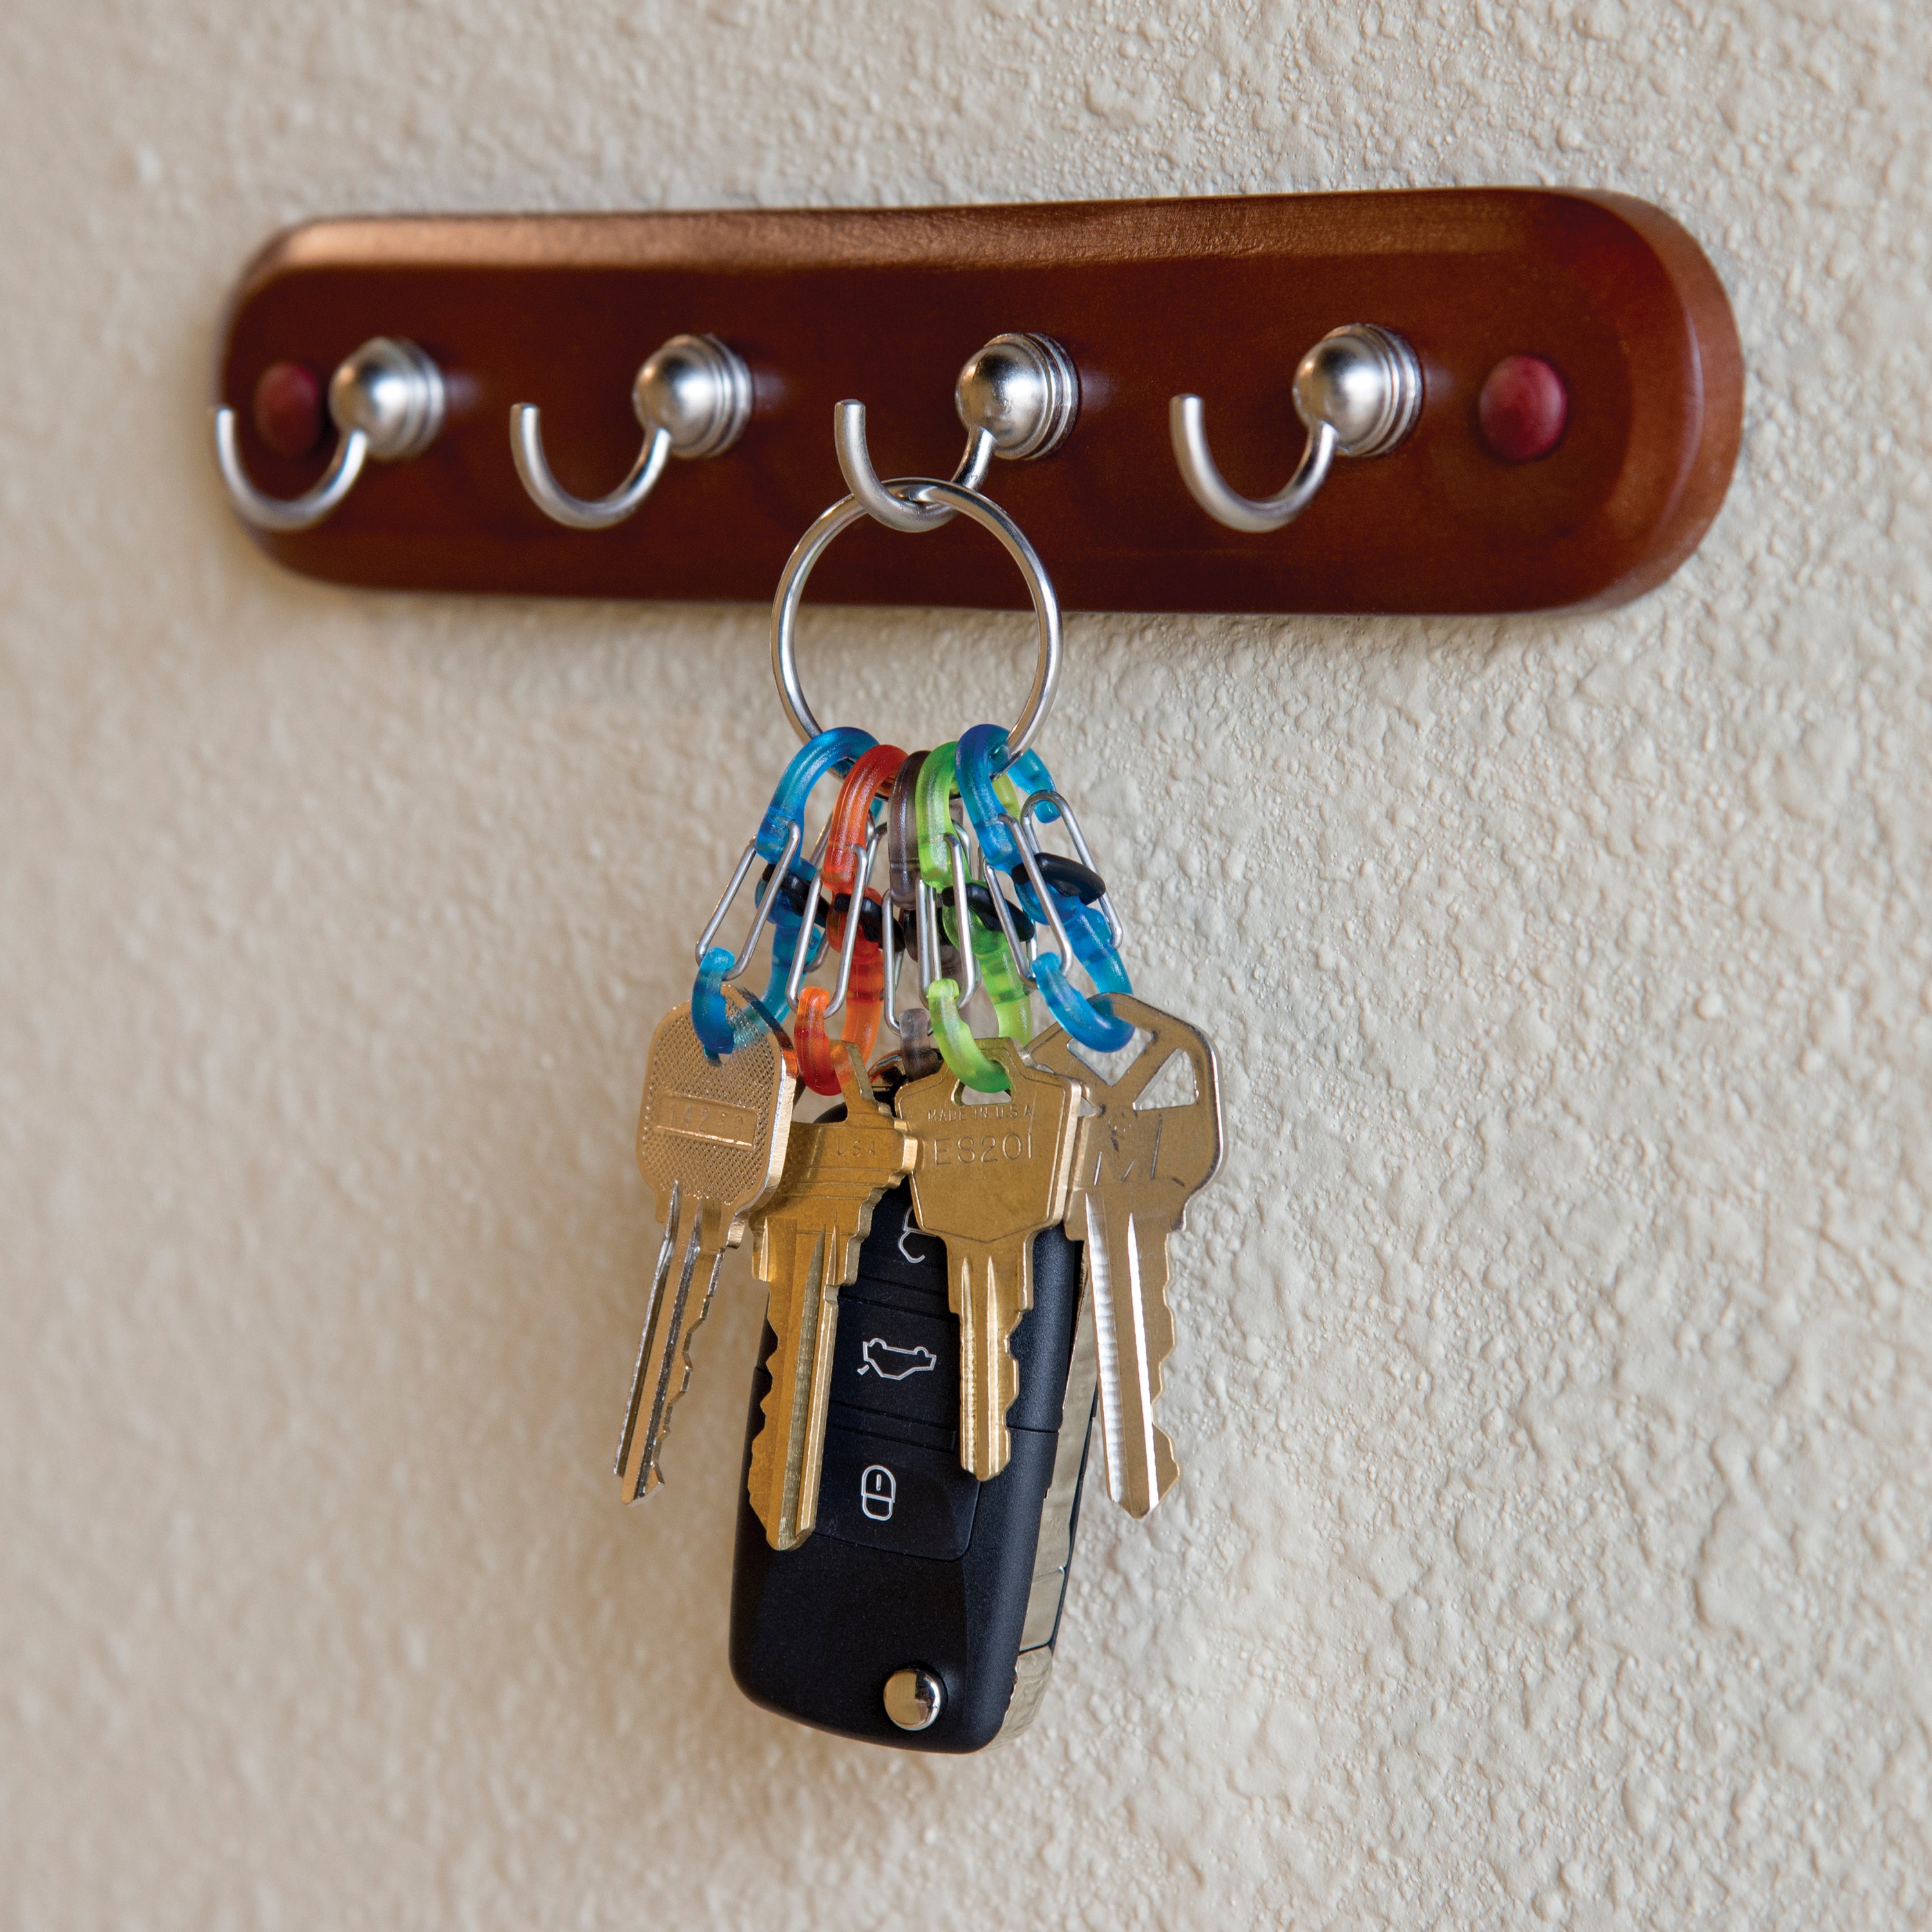 KeyRing Locker - S-Biner®